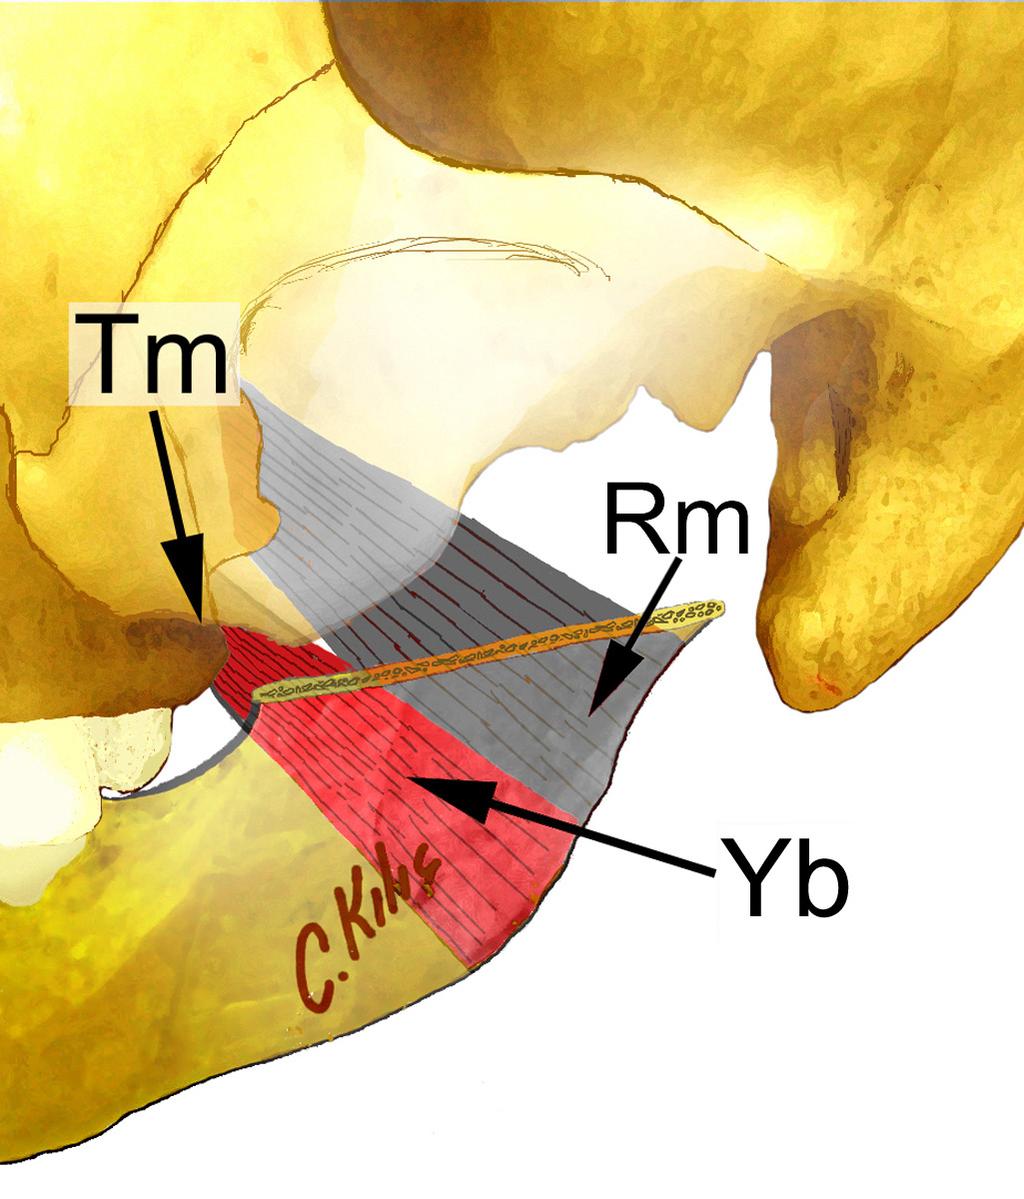 Şekil 15. Tuber maxilla (Tm), musculus pterygoideus medialis in yüzeyel başı (Yb), ve ramus mandibulae (Rm).